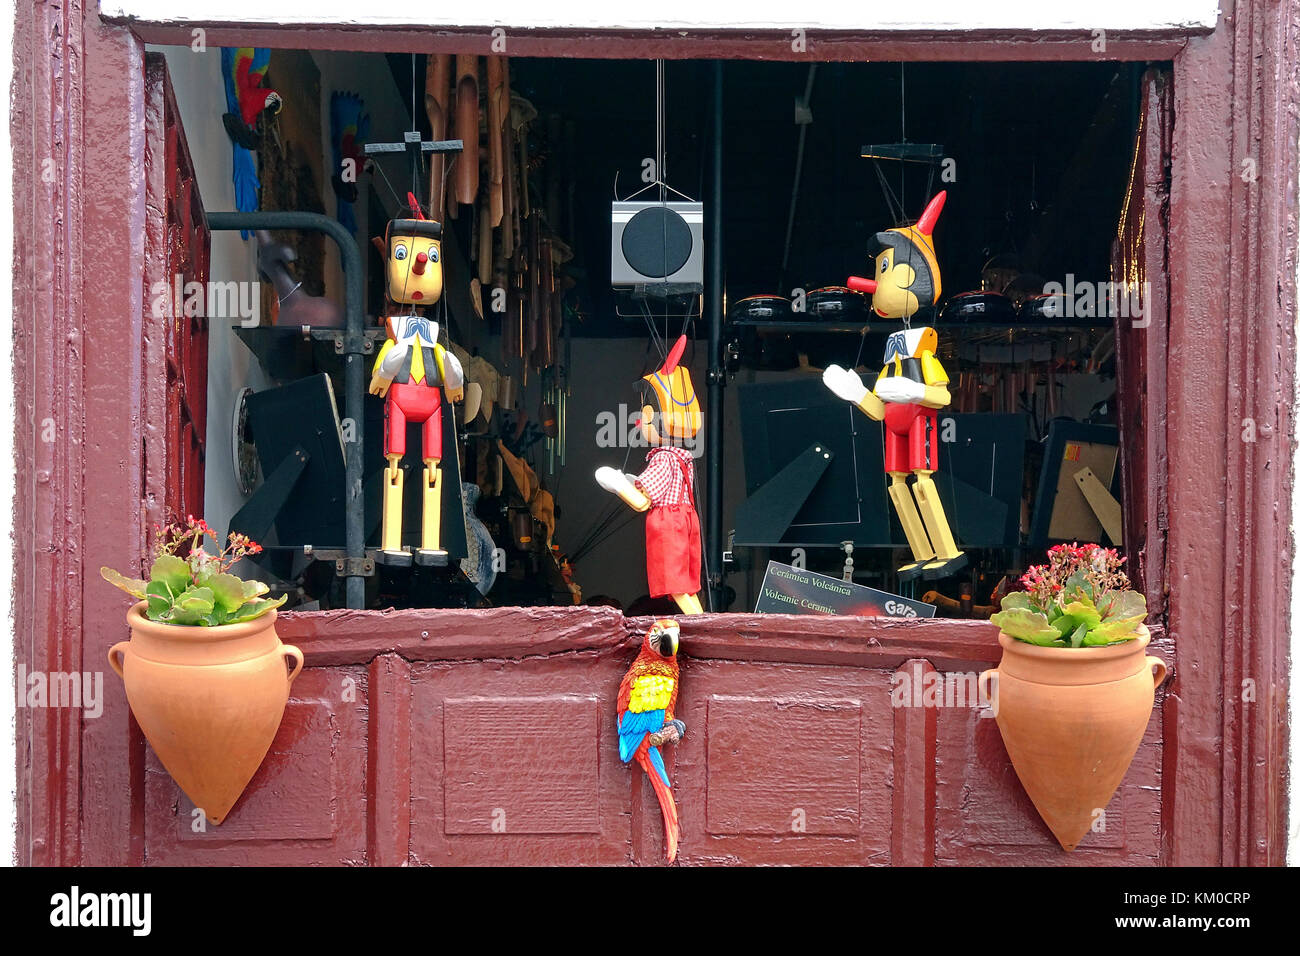 Pinocchio, shop vend des poupées en bois, artisanat, Garachico, village de la côte nord-ouest de l'île de Tenerife, Canaries, Espagne Banque D'Images